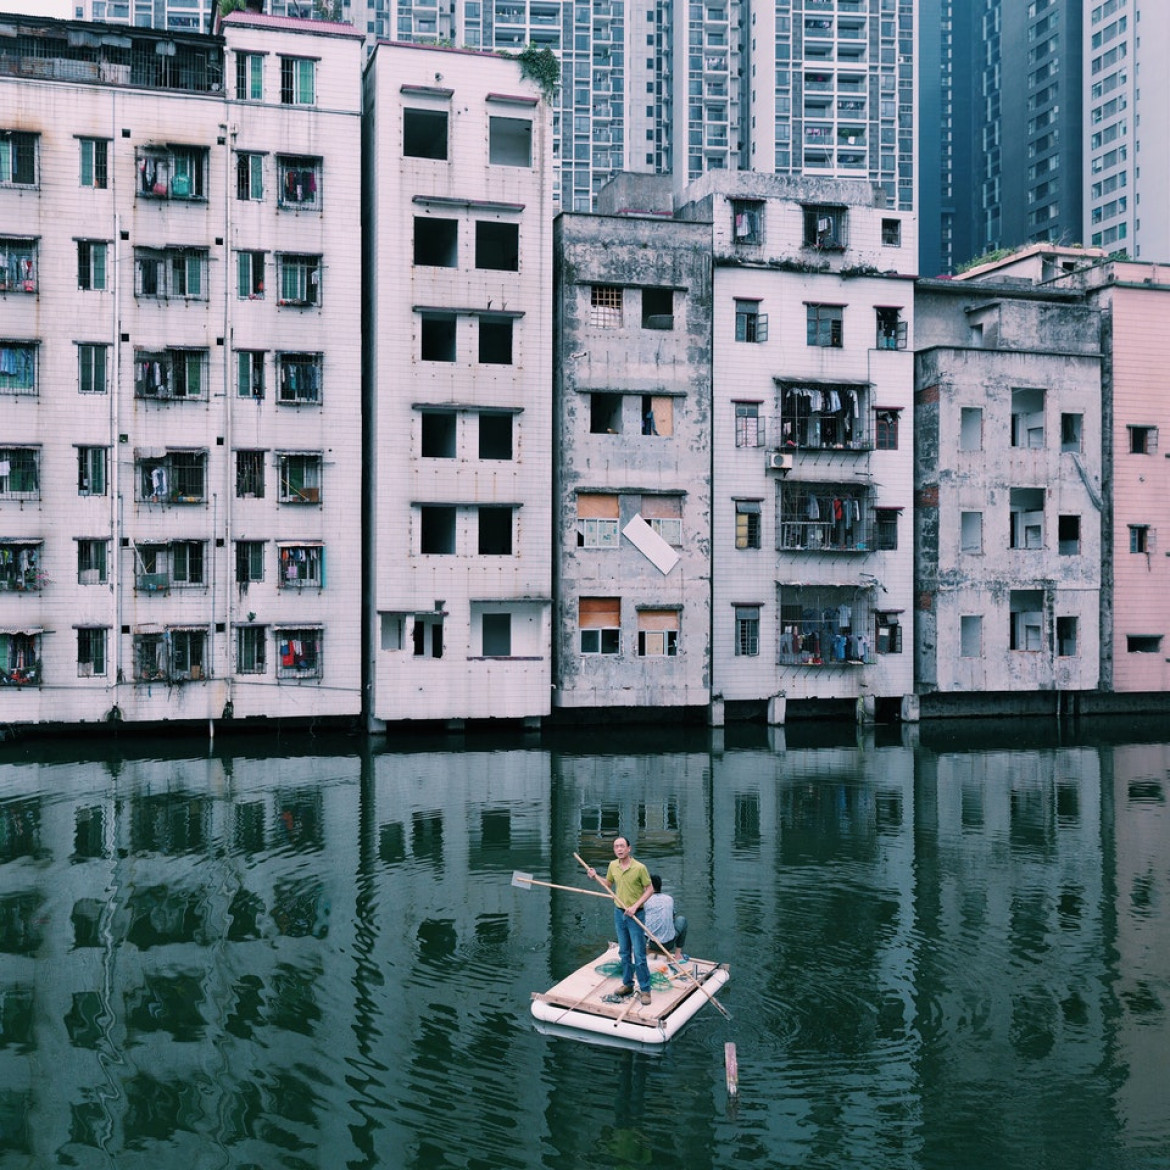 fot. Yuyang Liu / Decade of Change<br></br><br></br>
Guangzhou, Chiny, 2015. Dwóch mężczyzn łowi ryby w stawie Xian Village, który znajduje się w centrum miasta Guangzhou. Przez ponad 7 lat istniał konflikt między lokalnymi mieszkańcami a deweloperami z powodu nierównych wynagrodzeń i korupcji przywódców wiosek Xian. Wioska Xian jest uosobieniem urbanizacji Chin.